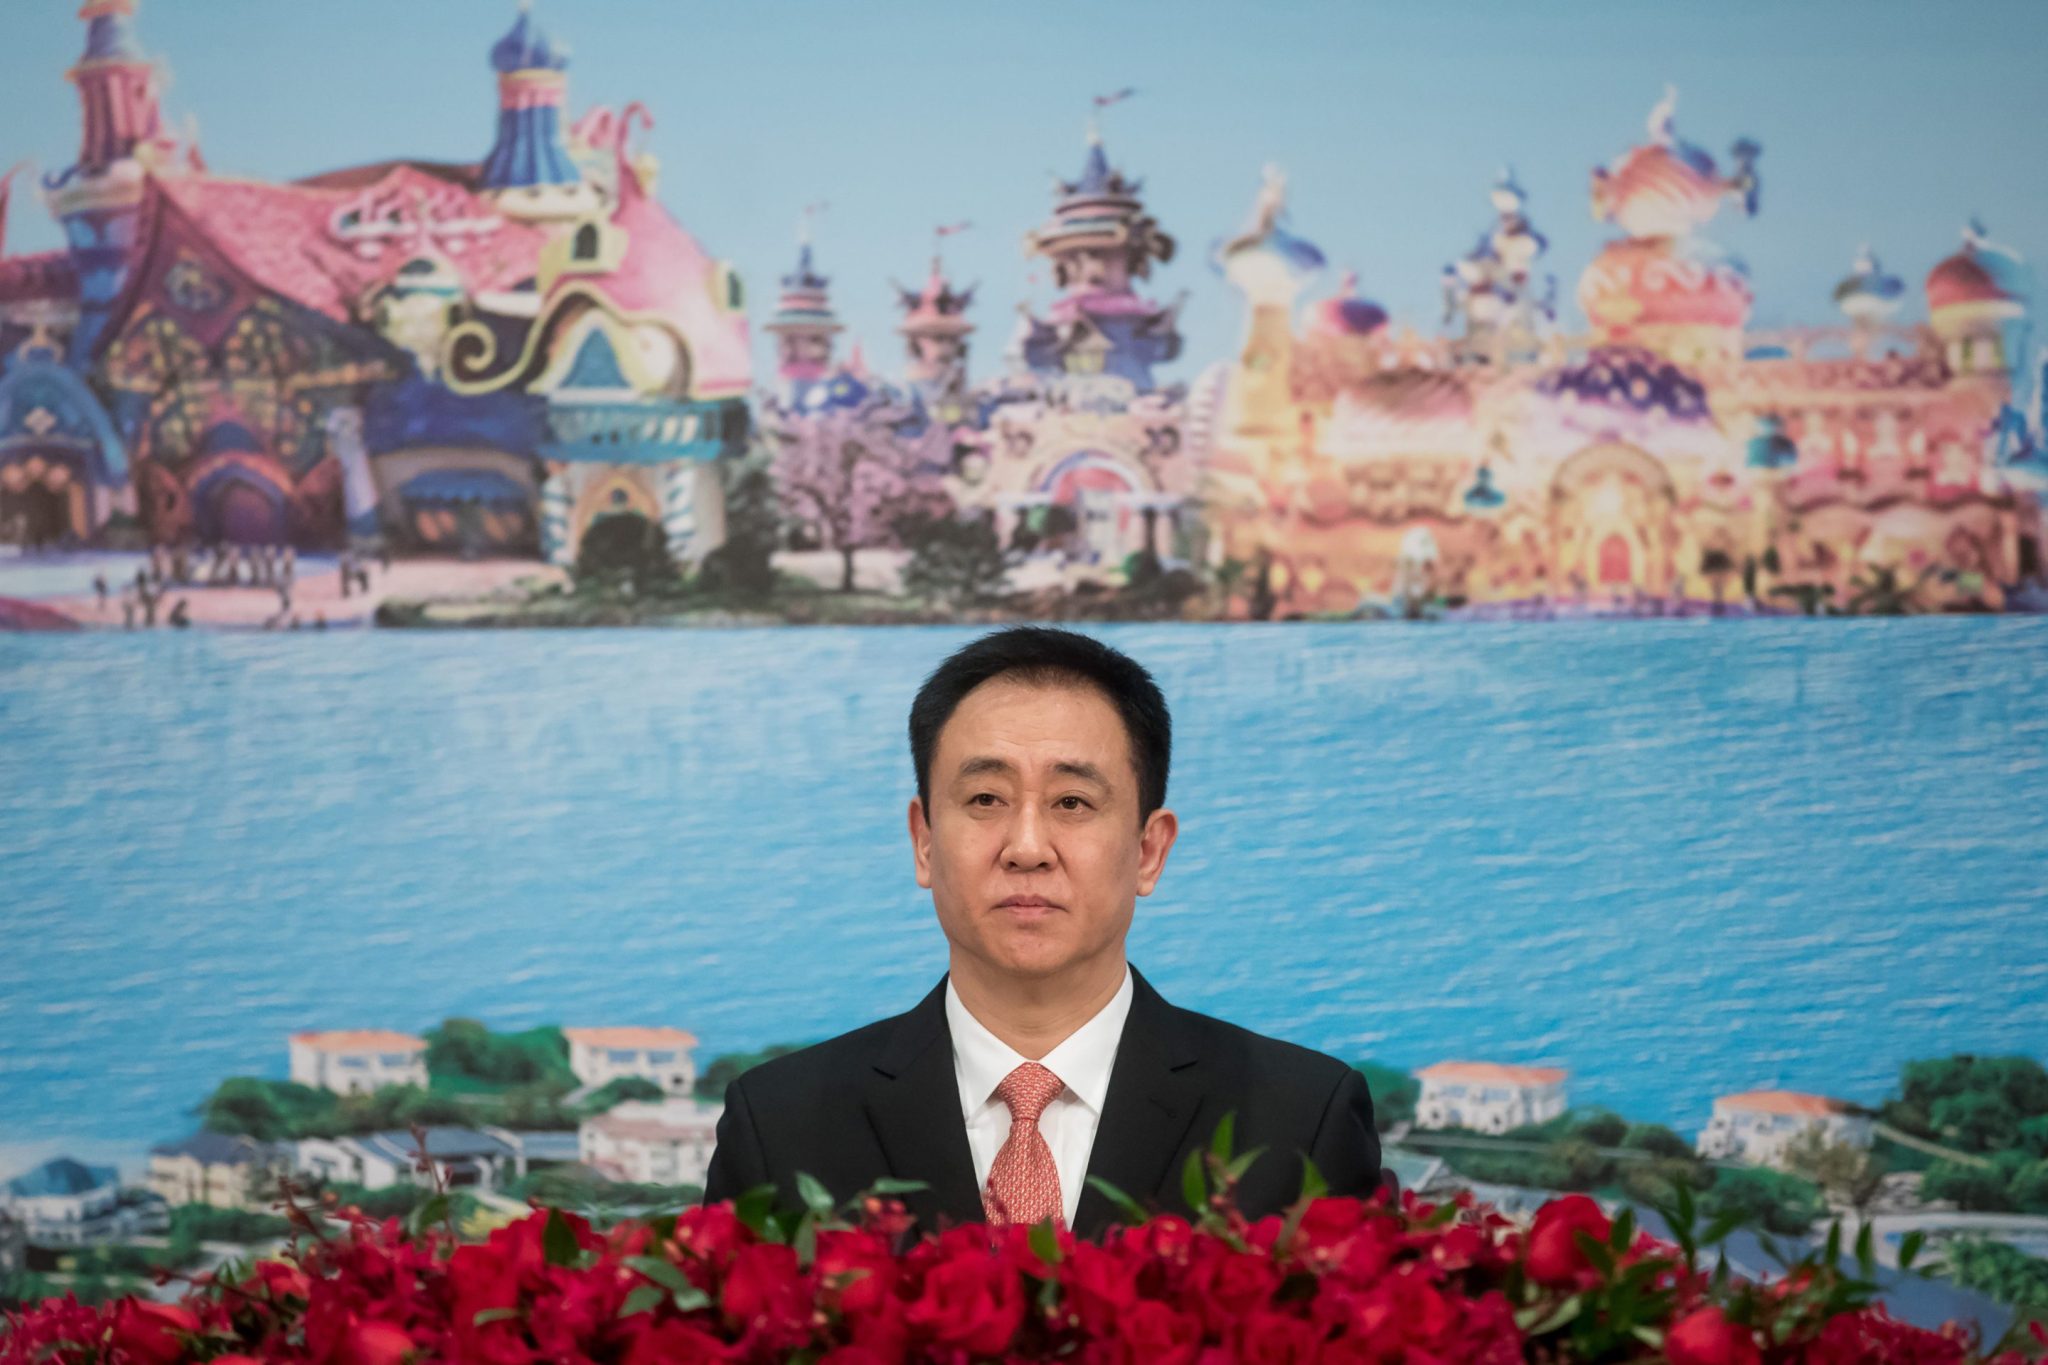 Beijing accuses Evergrande and Hui Ka Yan of inflating sales by $78B